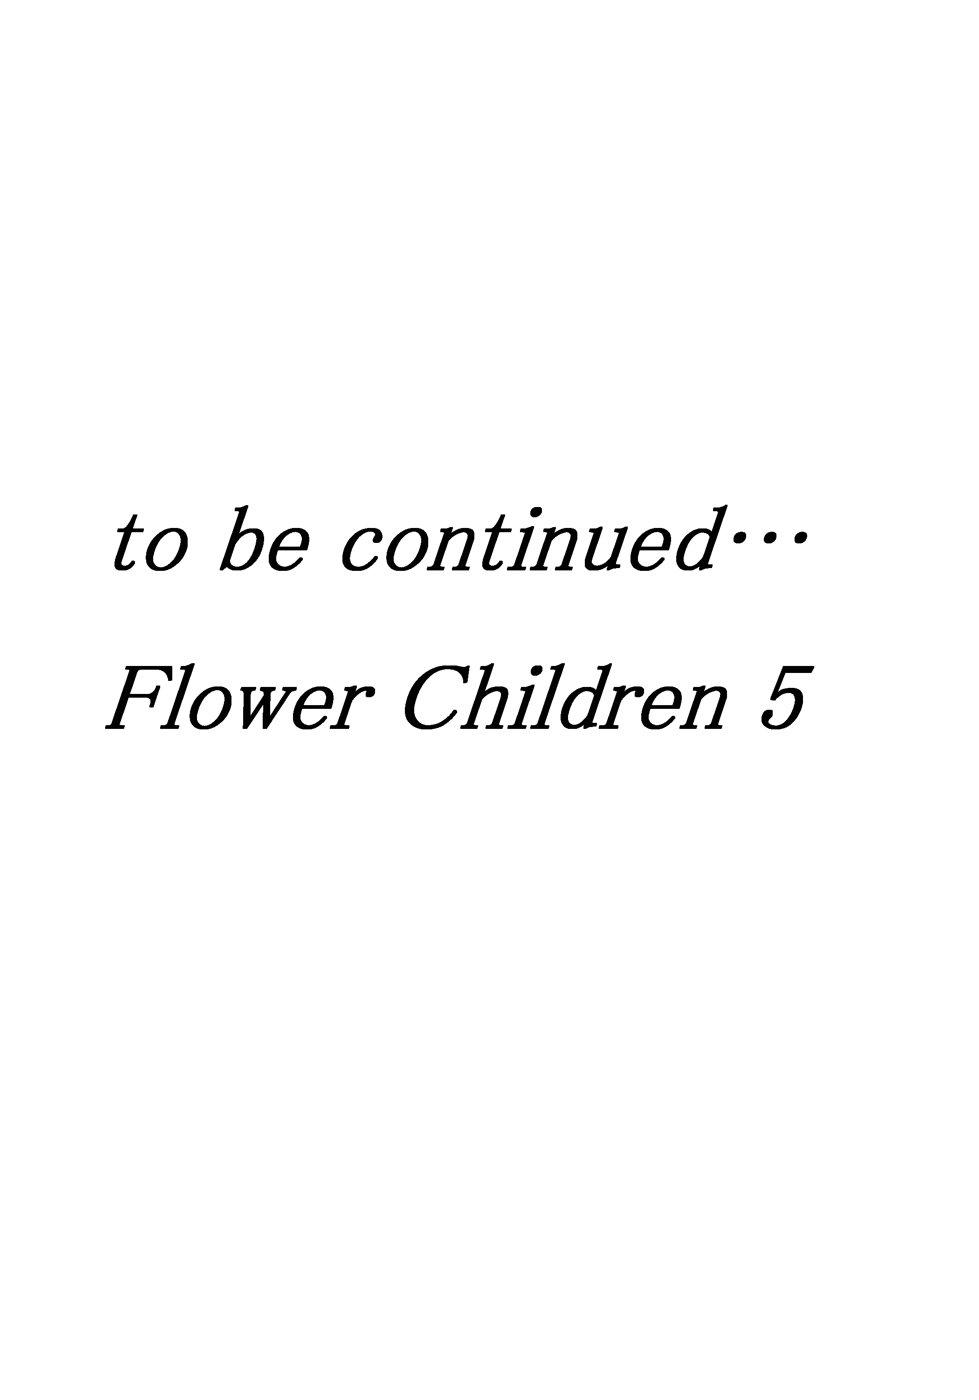 Flower Children 4 37